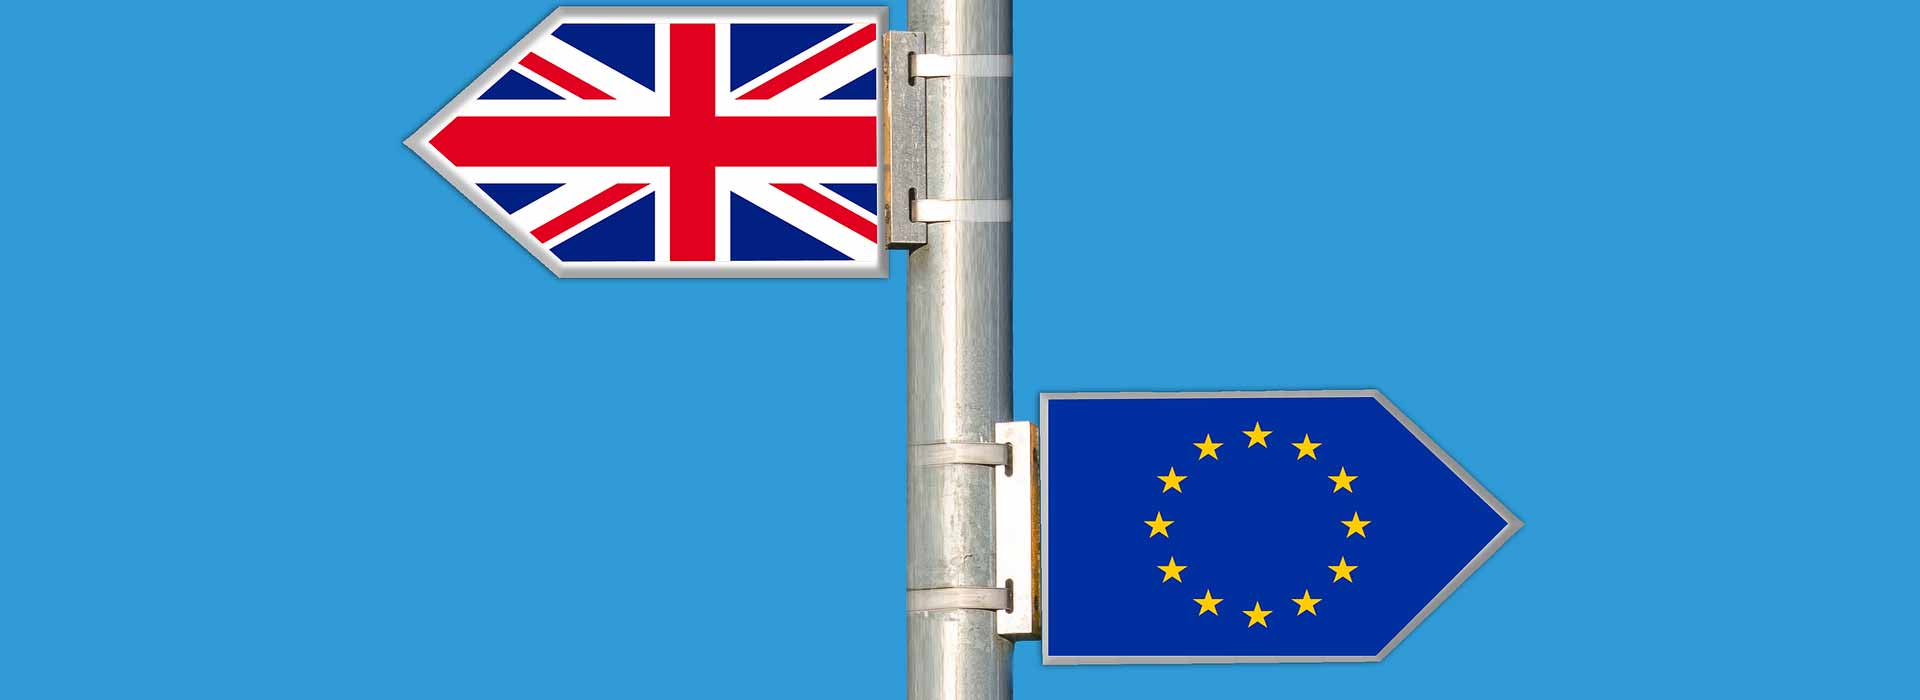 Brexit: nel 2020 non ci aspettiamo un accordo commerciale tra Regno Unito e UE